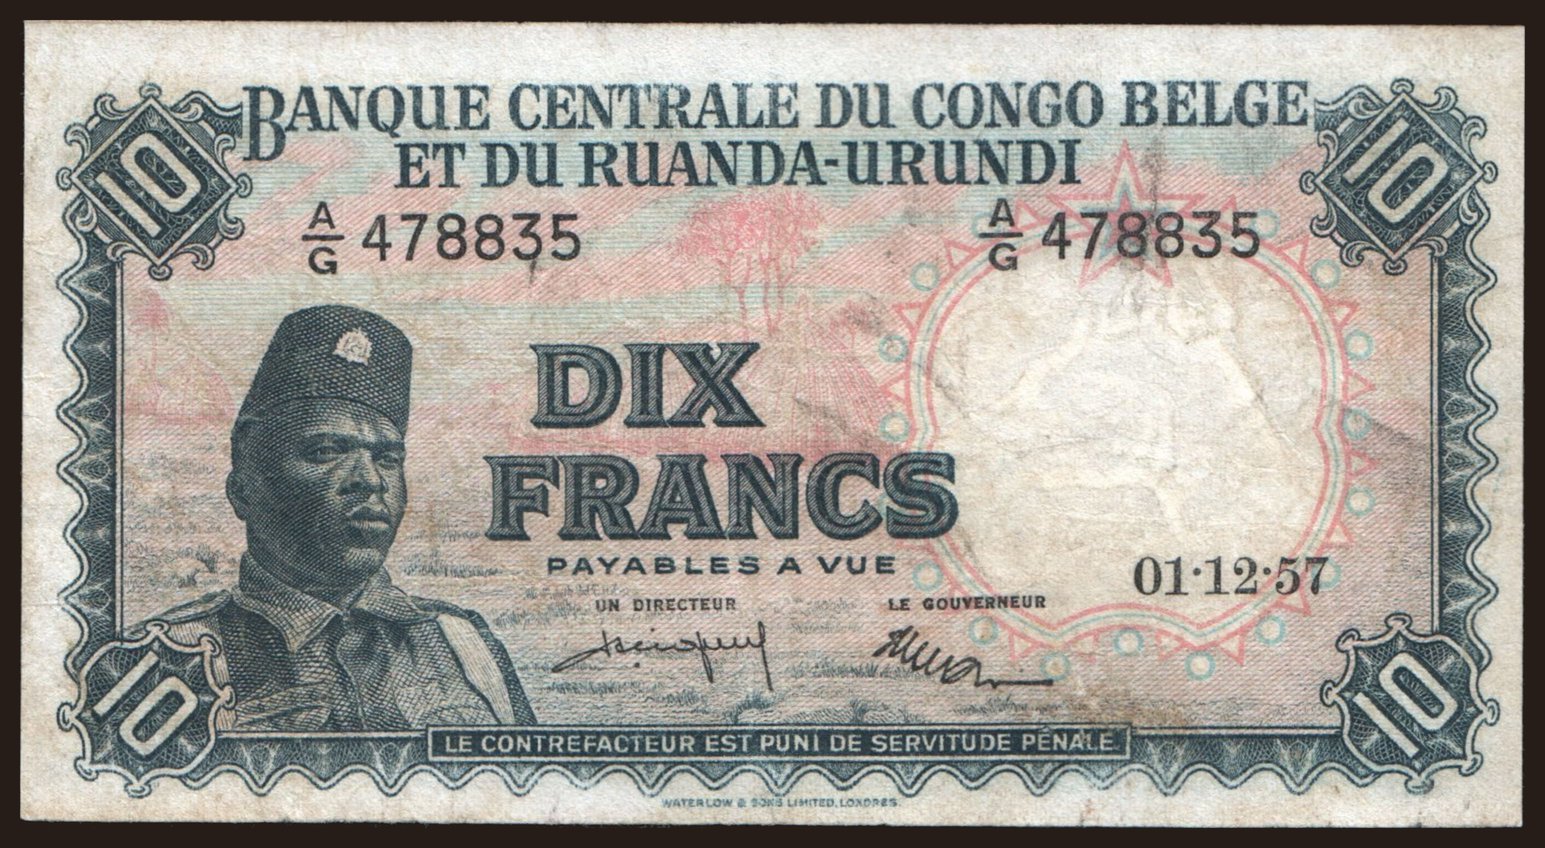 10 francs, 1957